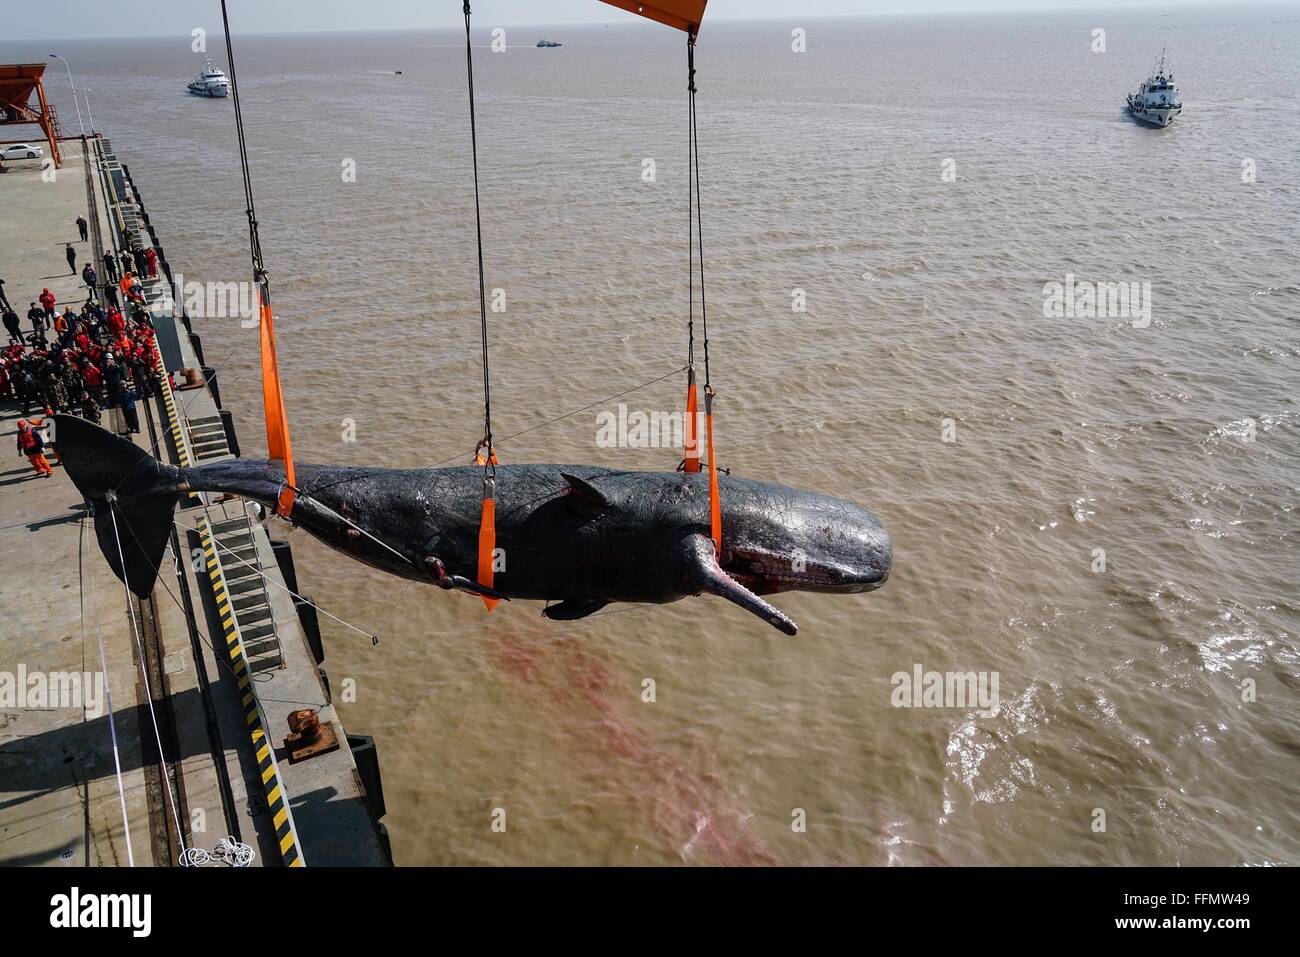 Nantong, provincia de Jiangsu de China. 16 Feb, 2016. Un muerto Cachalote varado en una playa de aguas poco profundas se eleva en la ciudad costera de Nantong, provincia de Jiangsu de China oriental, el 16 de febrero de 2016. Dos cachalotes fueron encontrados muertos en una playa de aguas poco profundas en Nantong. La más grande mide unos 16 metros de longitud y más de 25 toneladas de peso. Crédito: Ji Chunpeng/Xinhua/Alamy Live News Foto de stock